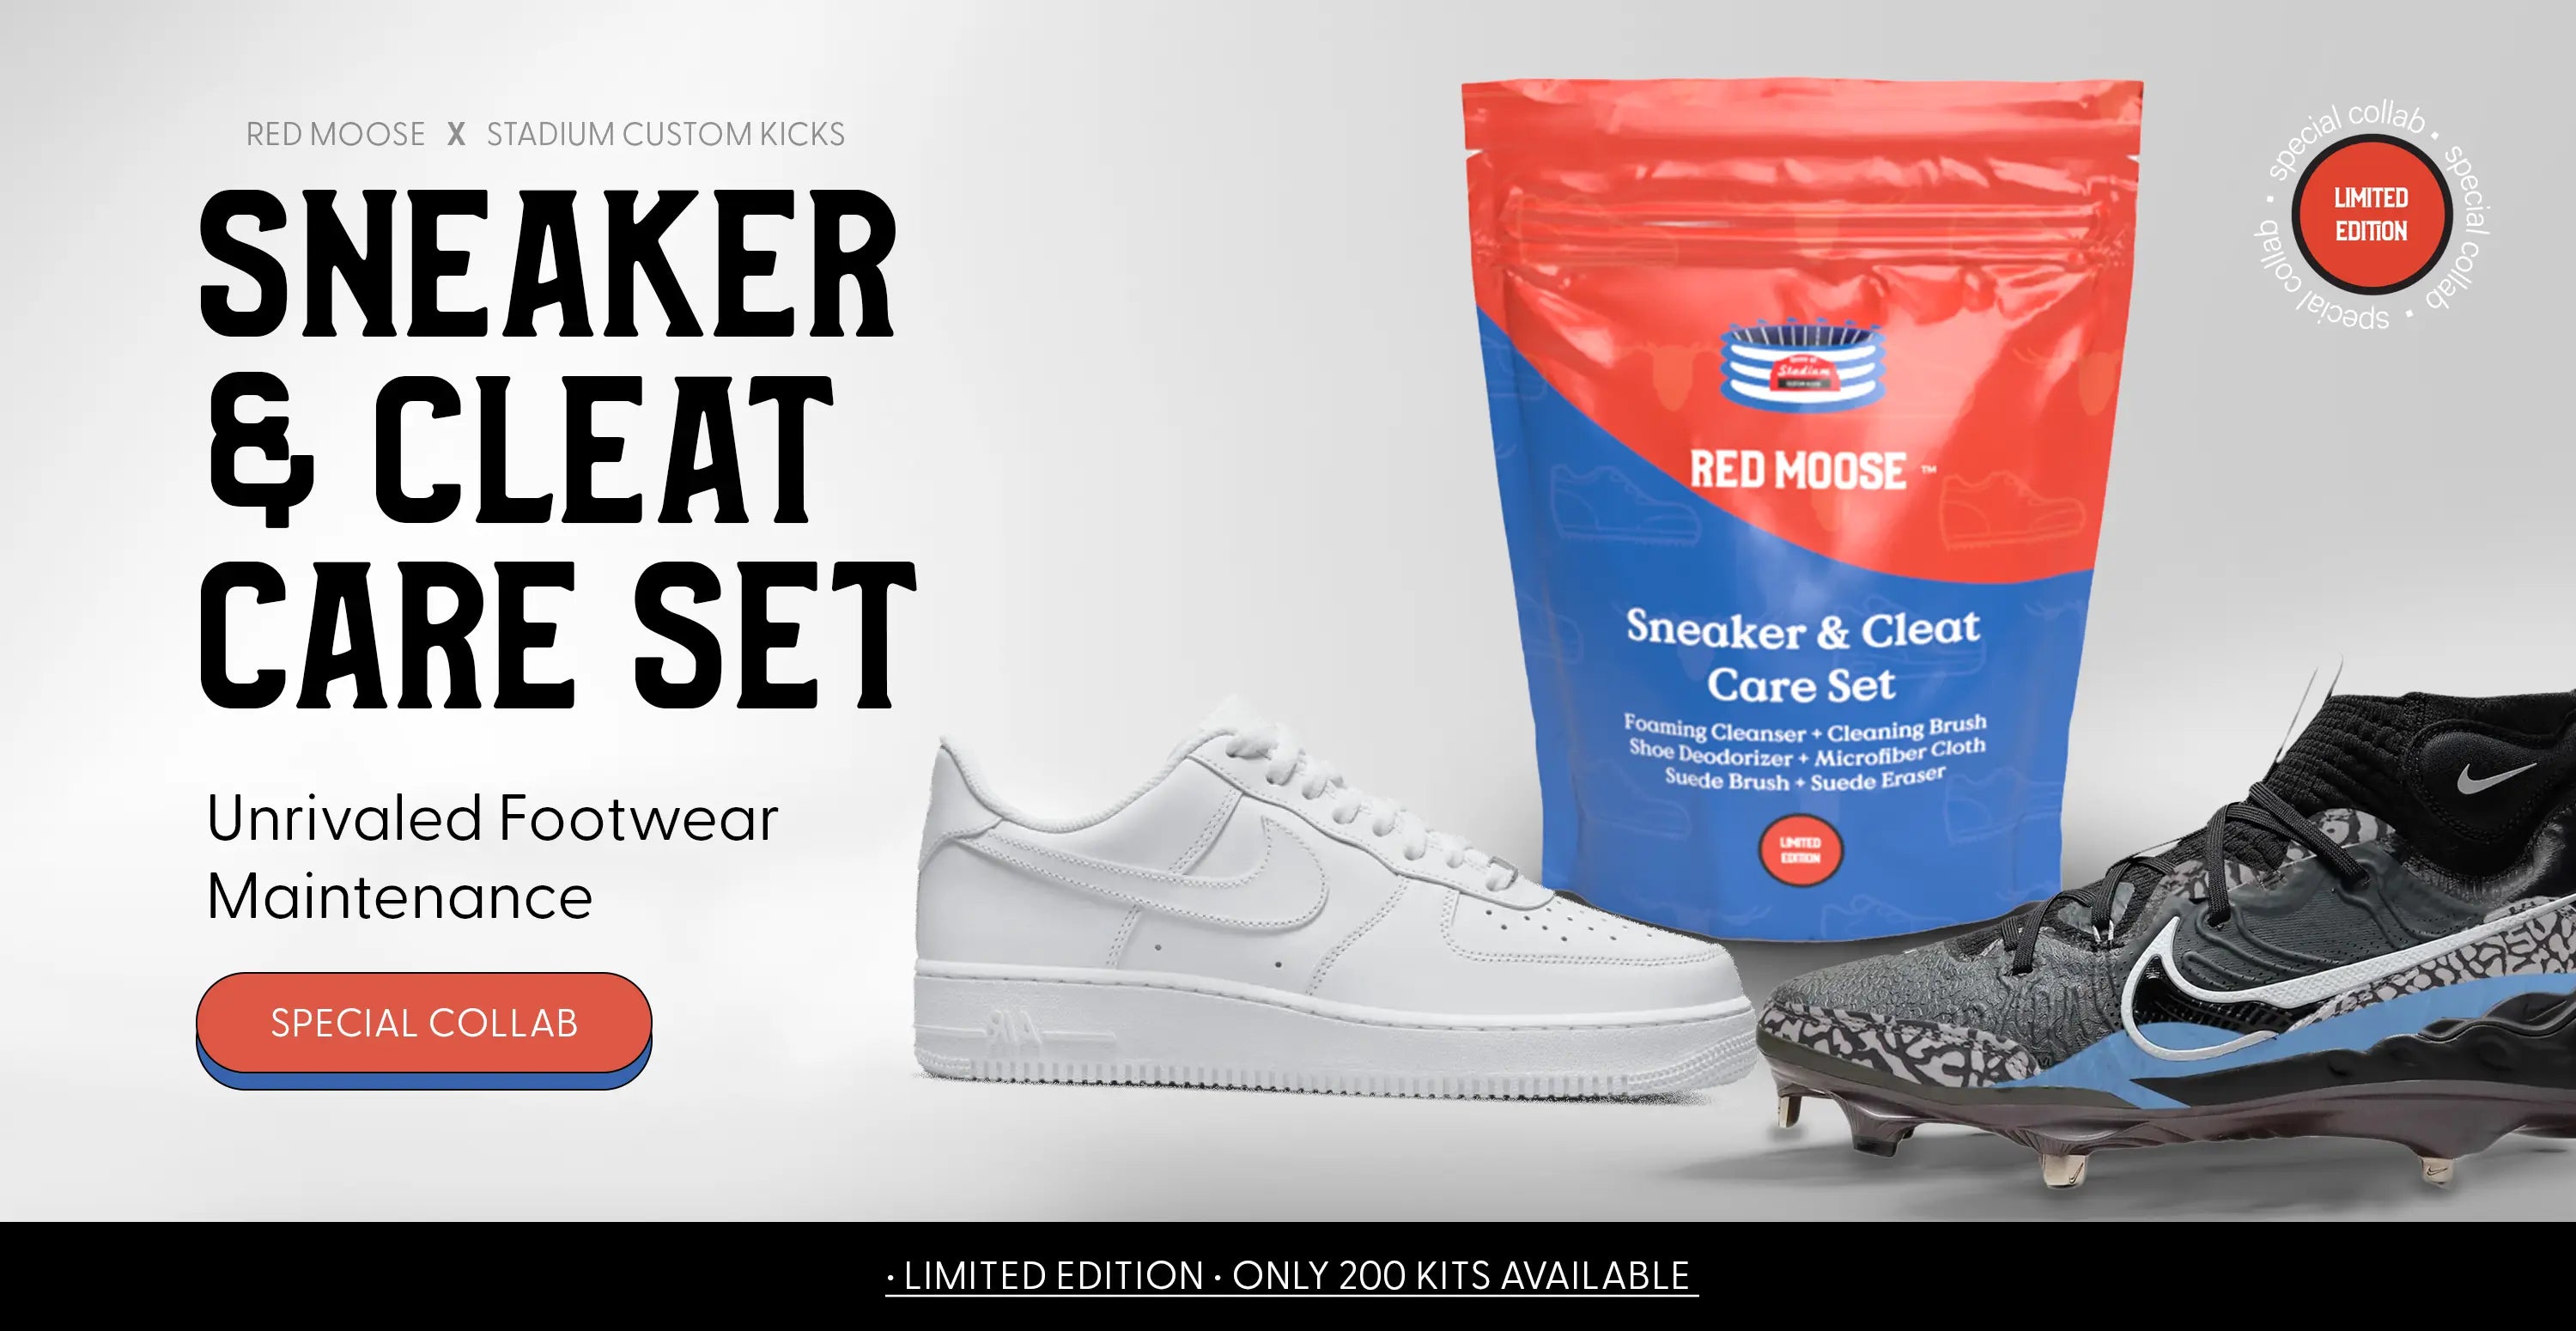 Red Moose  Sneaker Cleaner